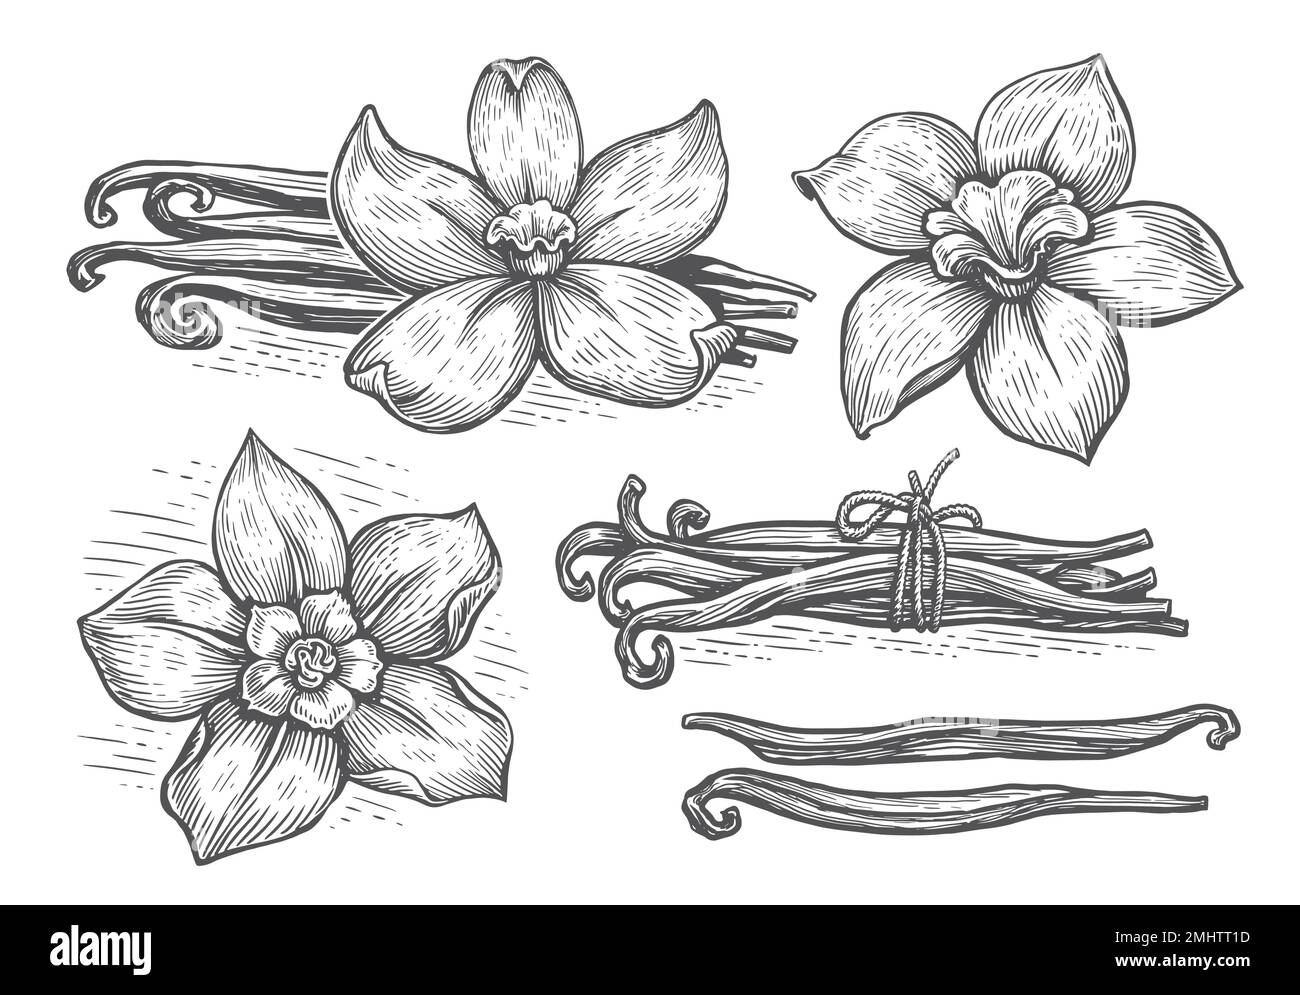 Gousses de vanille et fleur d'orchidée, illustration vectorielle d'esquisse. Ensemble d'herbes épicées à la vanille Illustration de Vecteur